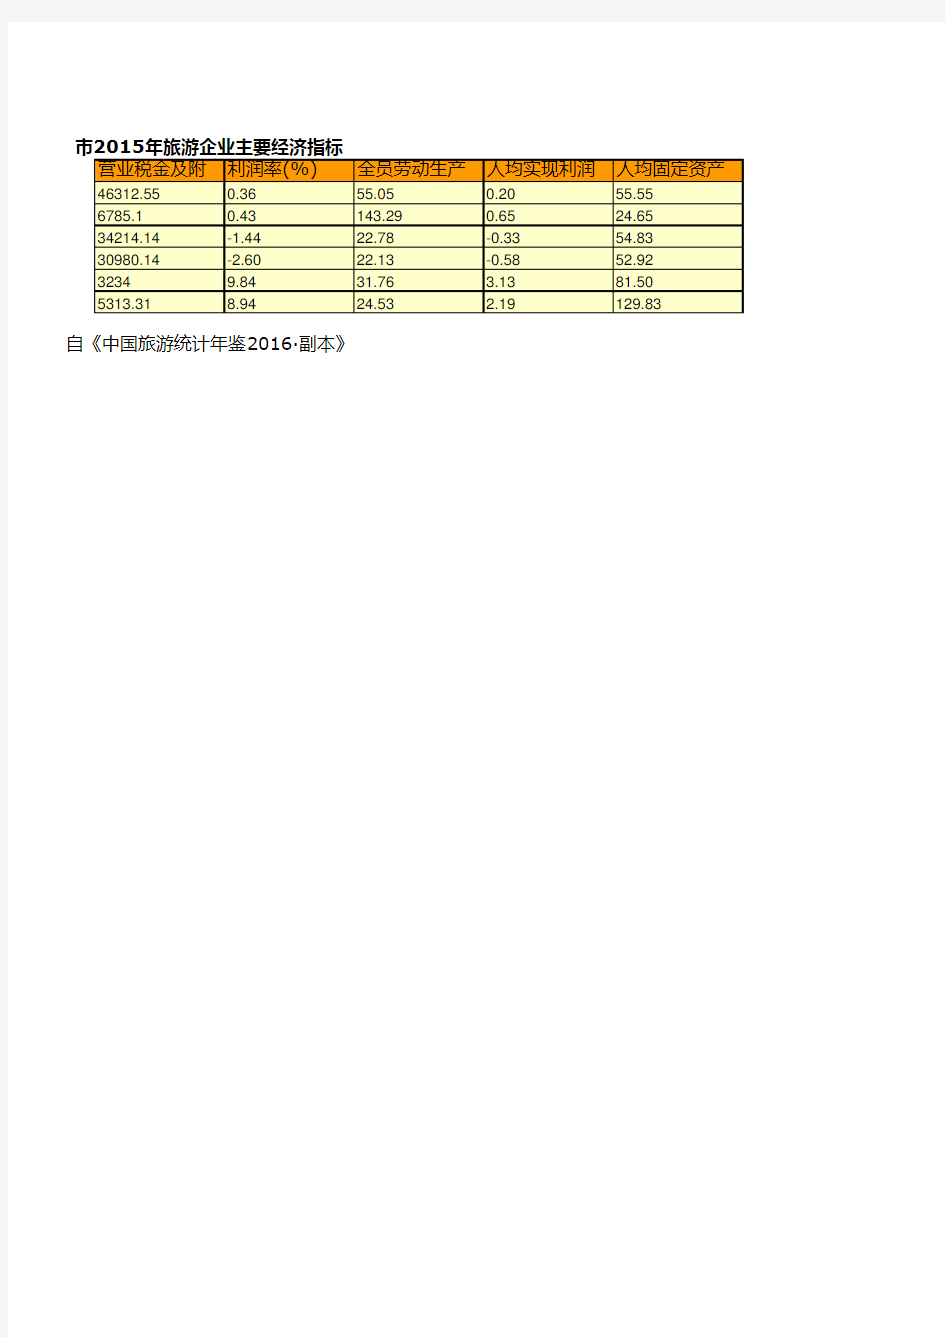 中国旅游统计年鉴2016全国各地指标：杭州市2015年旅游企业主要经济指标